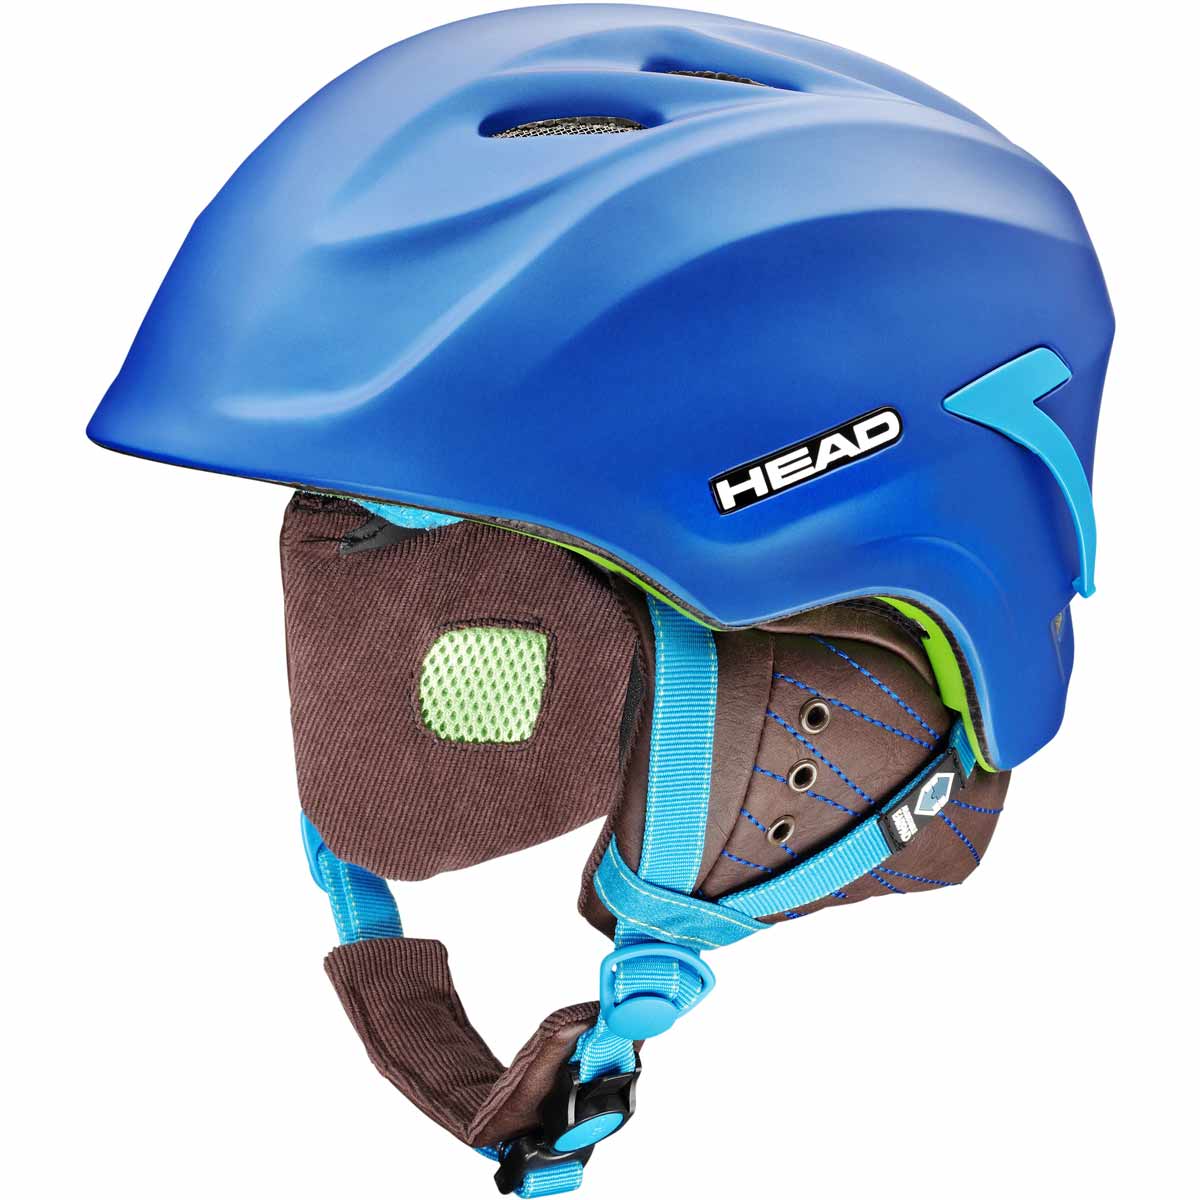 ECHO - Ski helmet